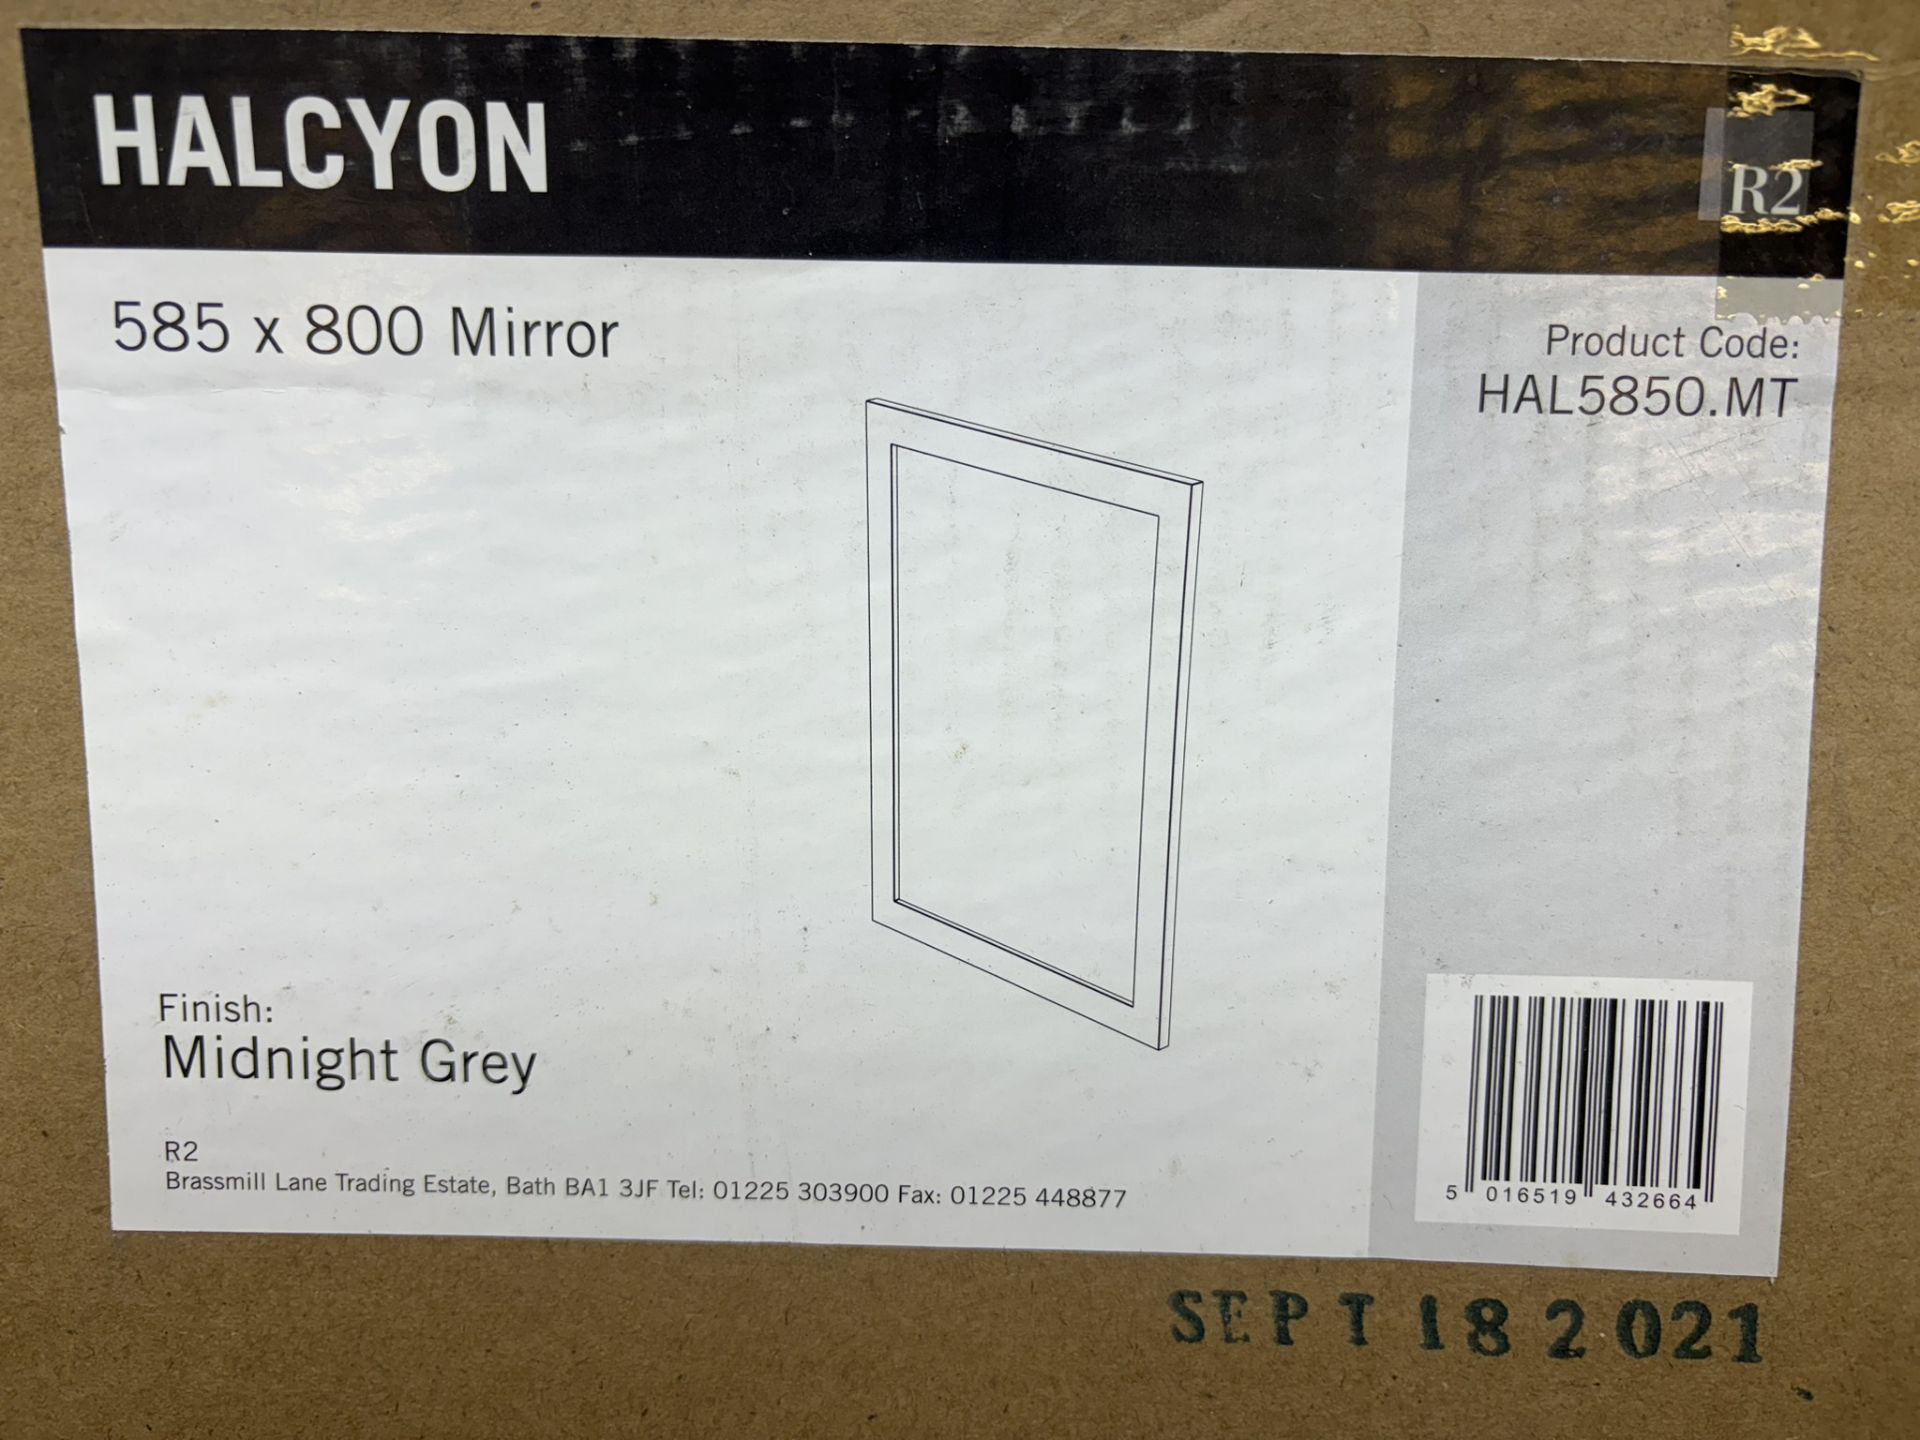 R2 Bathrooms Halcyon HAL5850.MT 585 x 800 Mirror - Midnight Grey - Image 2 of 3